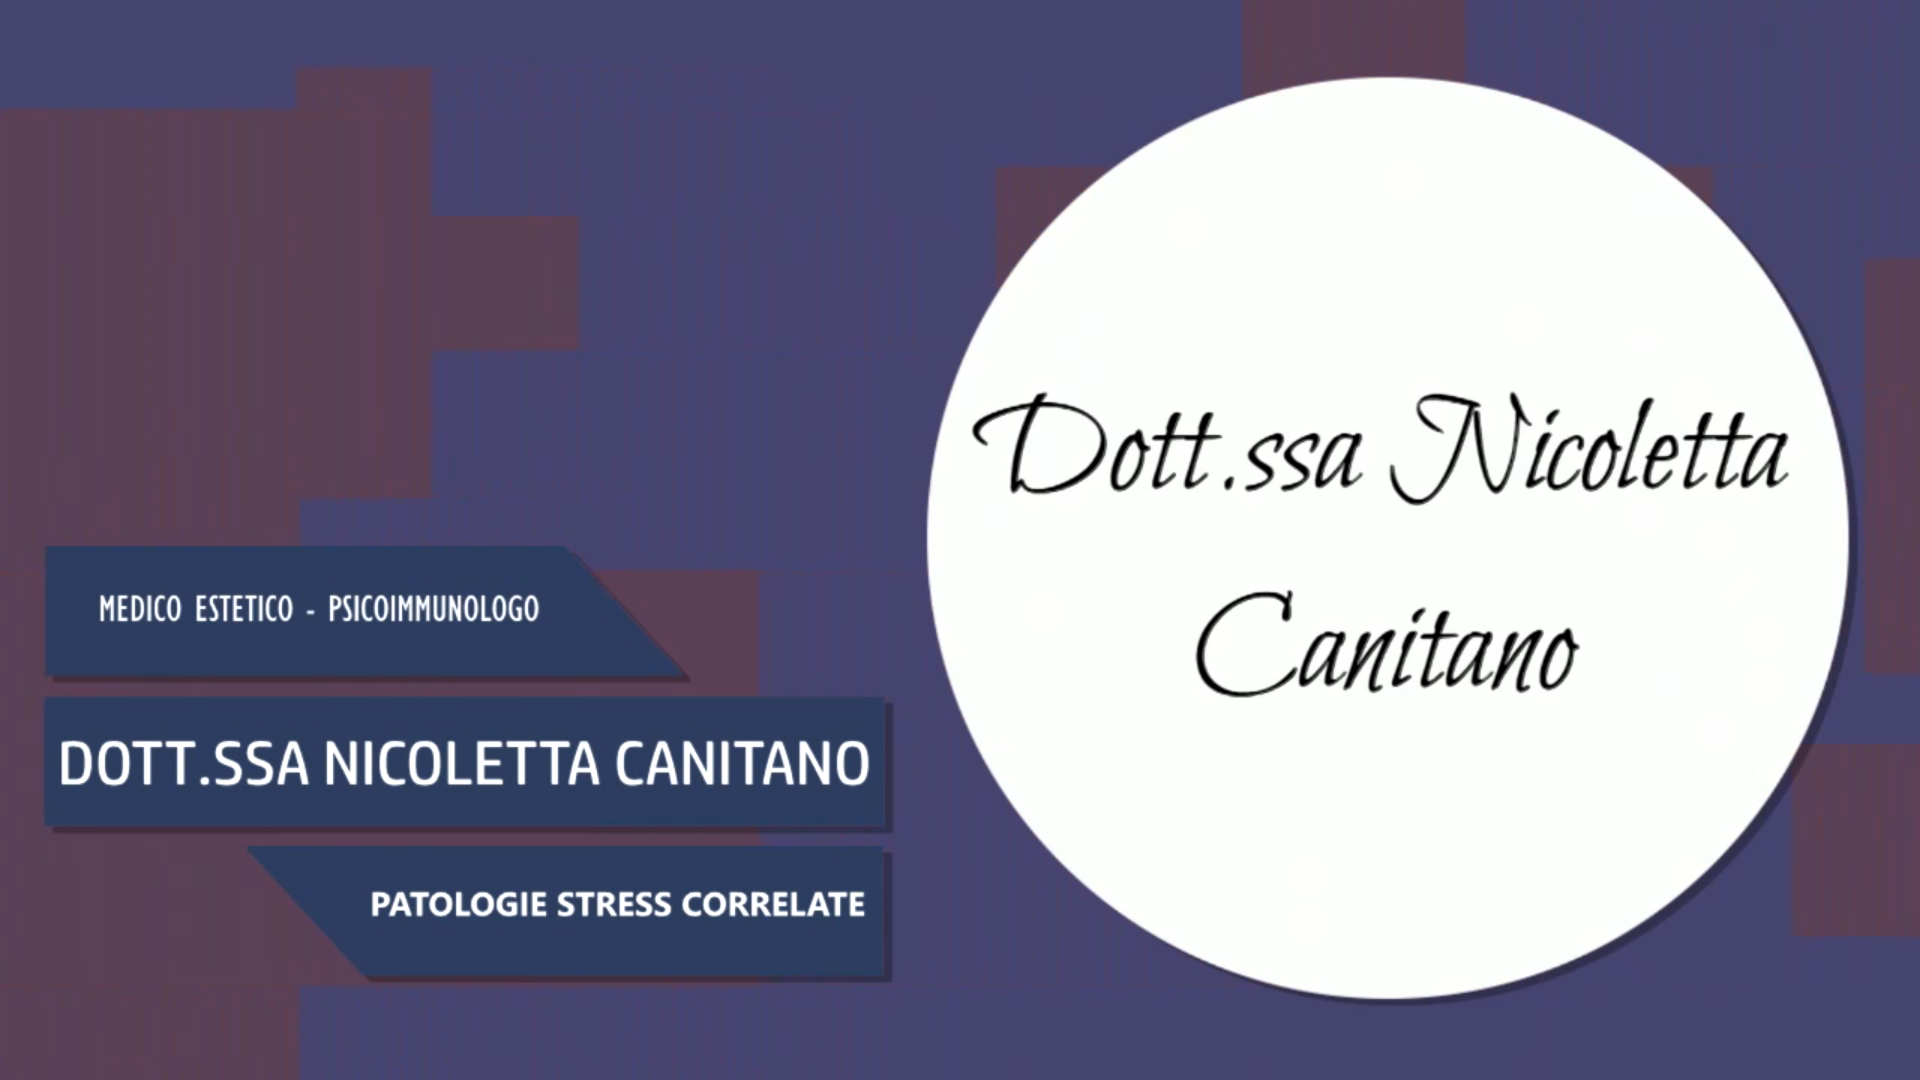 Intervista alla Dott.ssa Nicoletta Canitano – Patologie Stress correlate